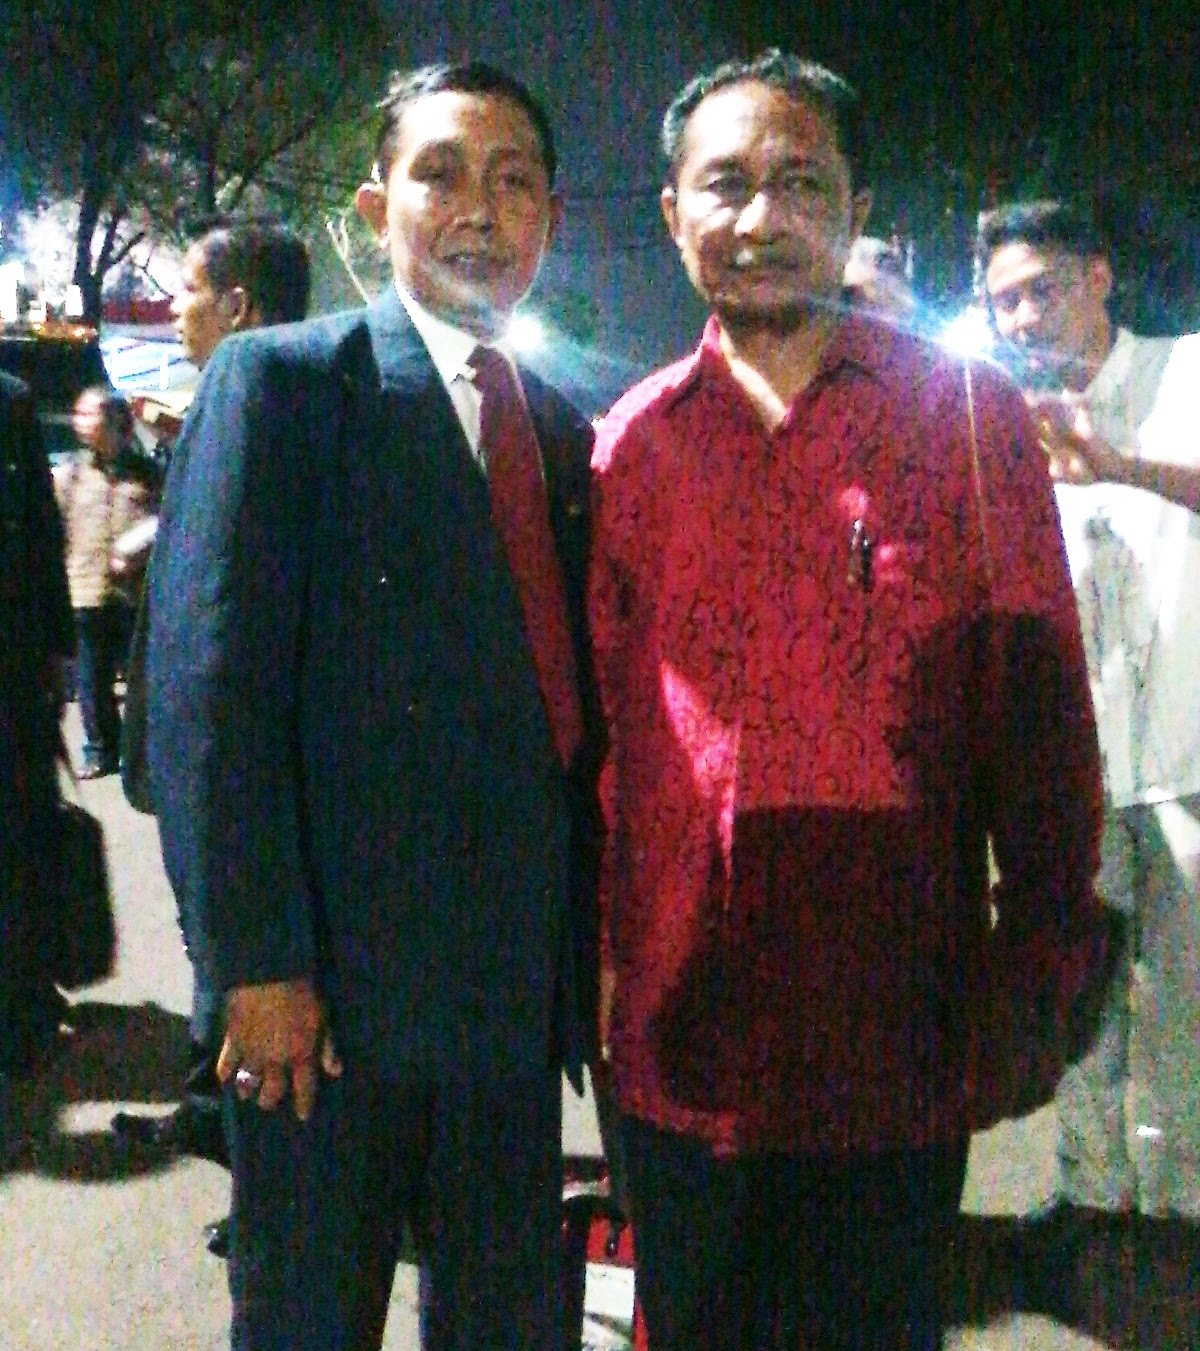 Ketum Presidium Pusat RI Achmad Lulang, SH bersama R.Soekrisno (PU/Pemred Potret RI 007)